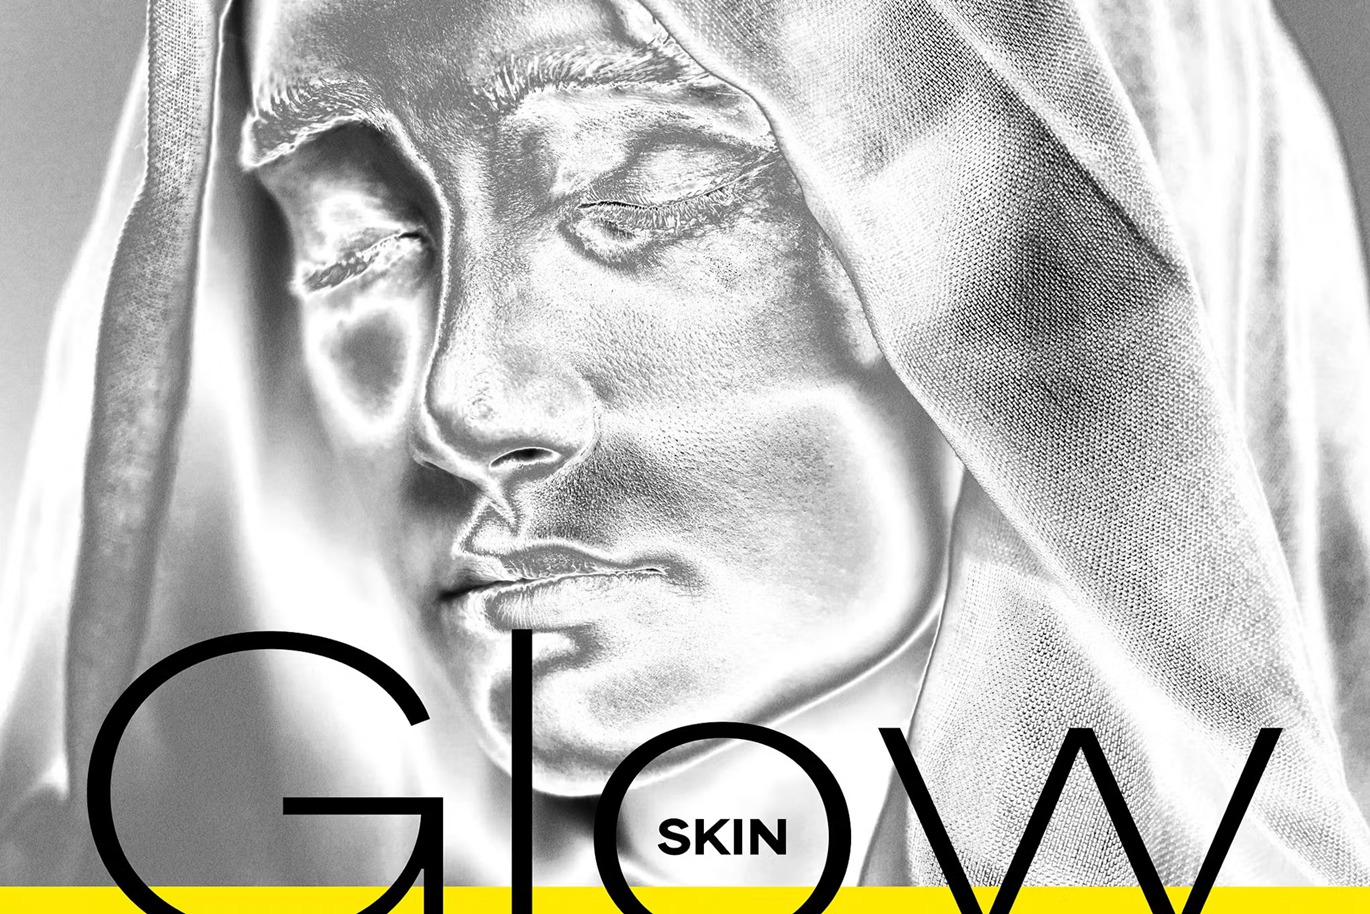 高质量银色人物皮肤图像特效PSD模板 Glow Skin Photo Effect 图片素材 第1张